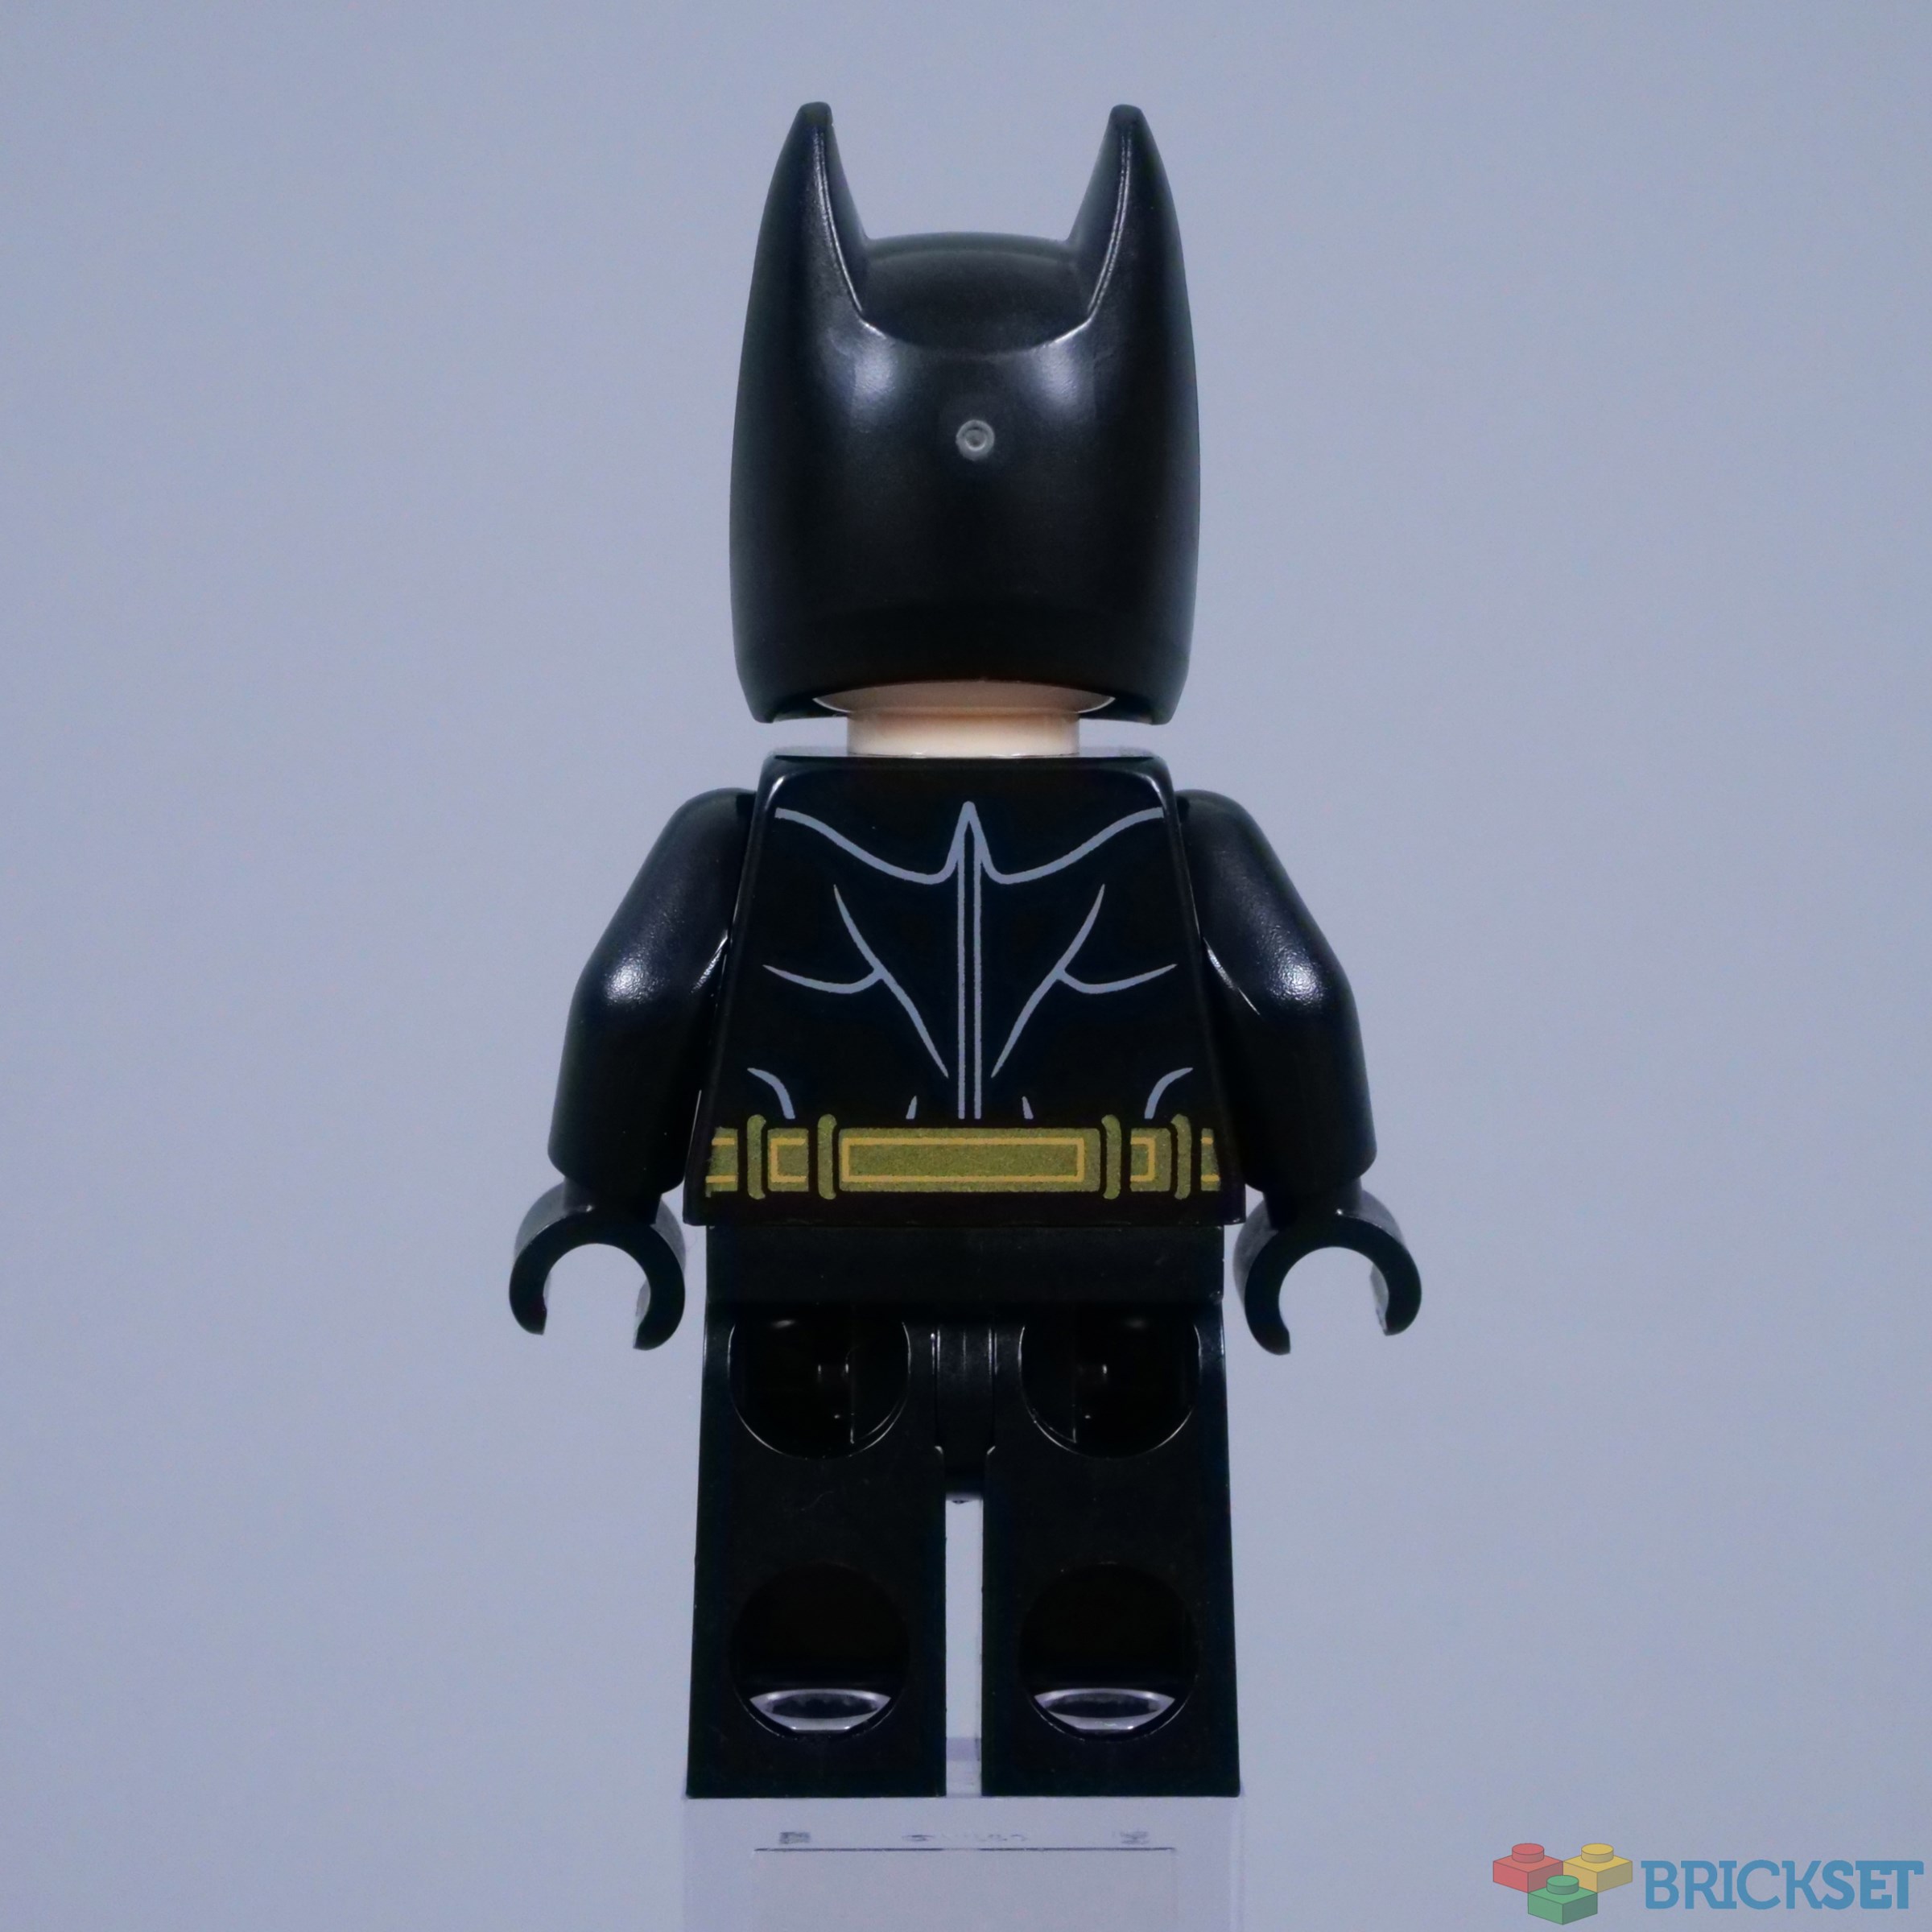 LEGO® Batmobile™: Batman™ vs. The Joker™ Chase – 76224 – LEGOLAND New York  Resort